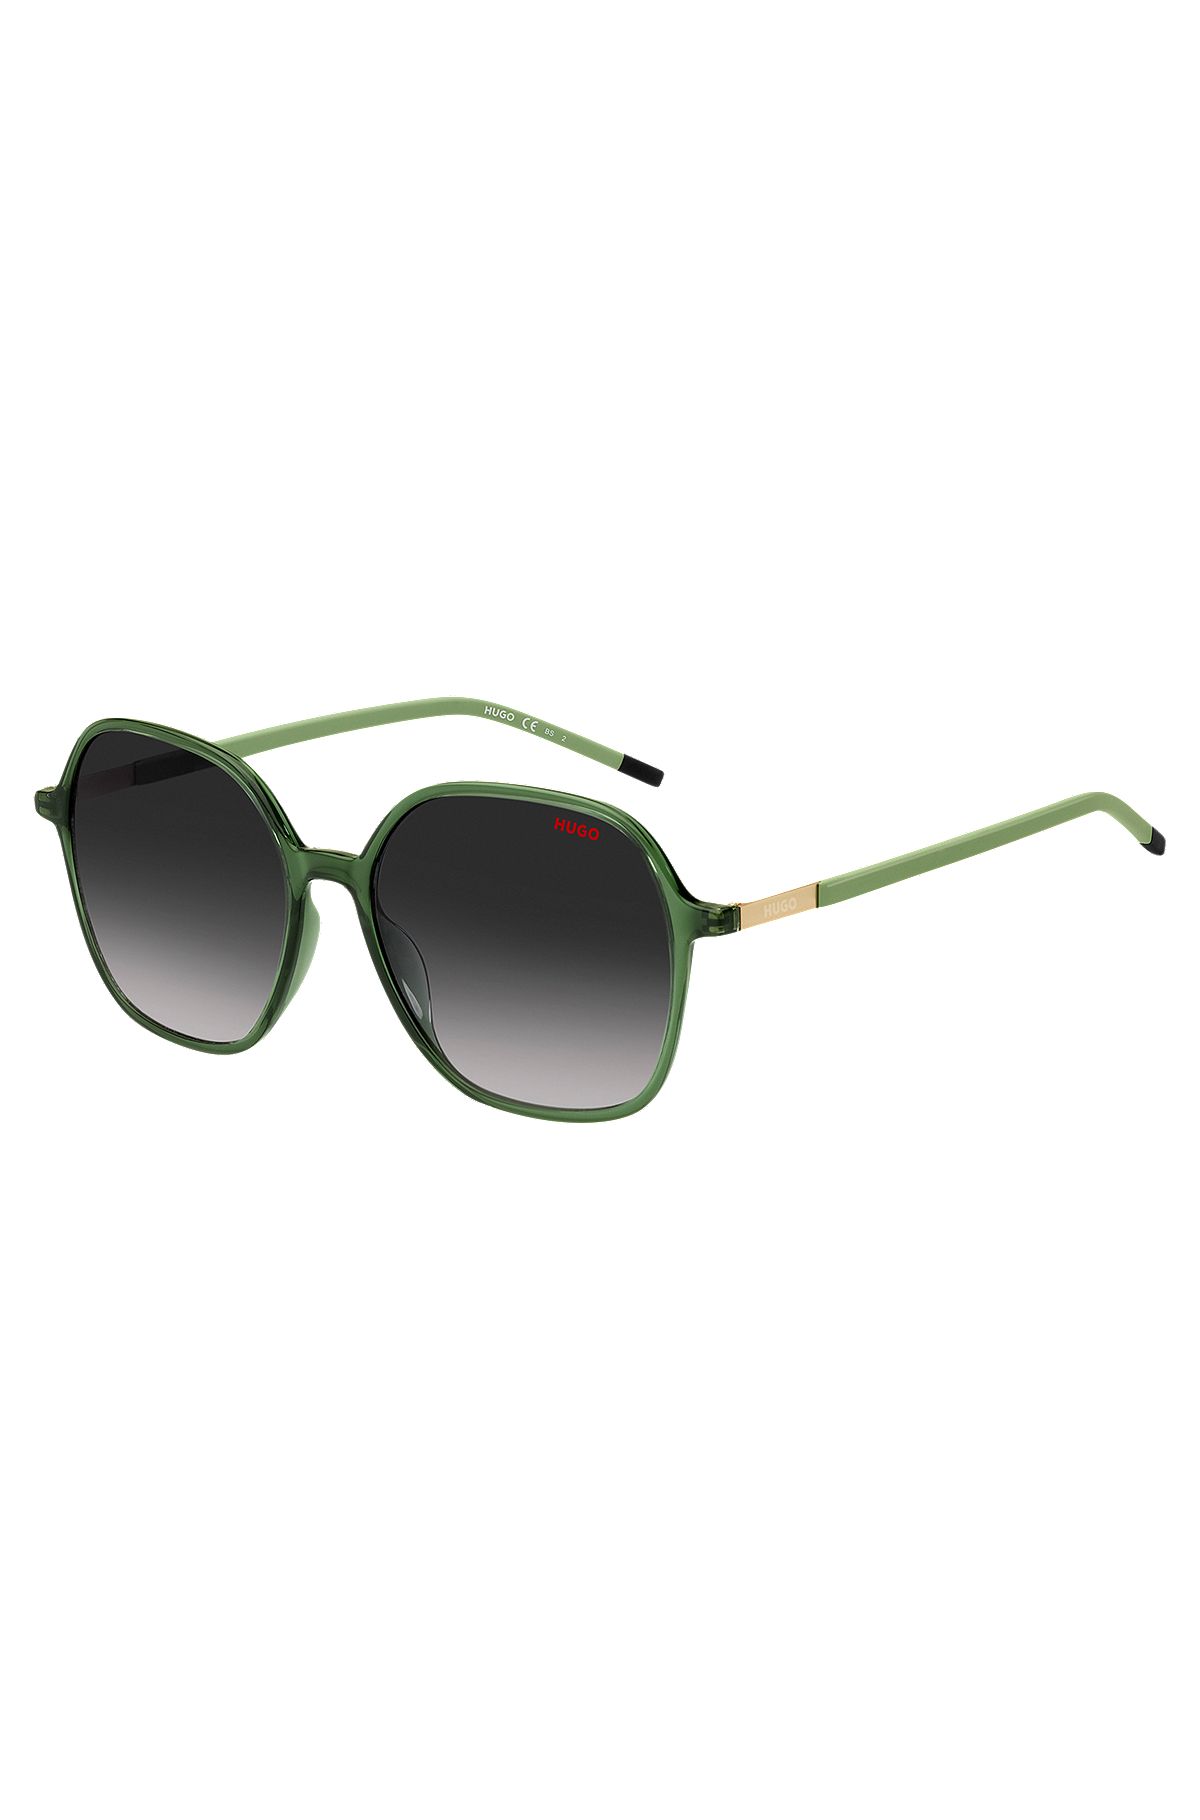 Groene zonnebril met pootjes van roestvrij staal, Donkergroen